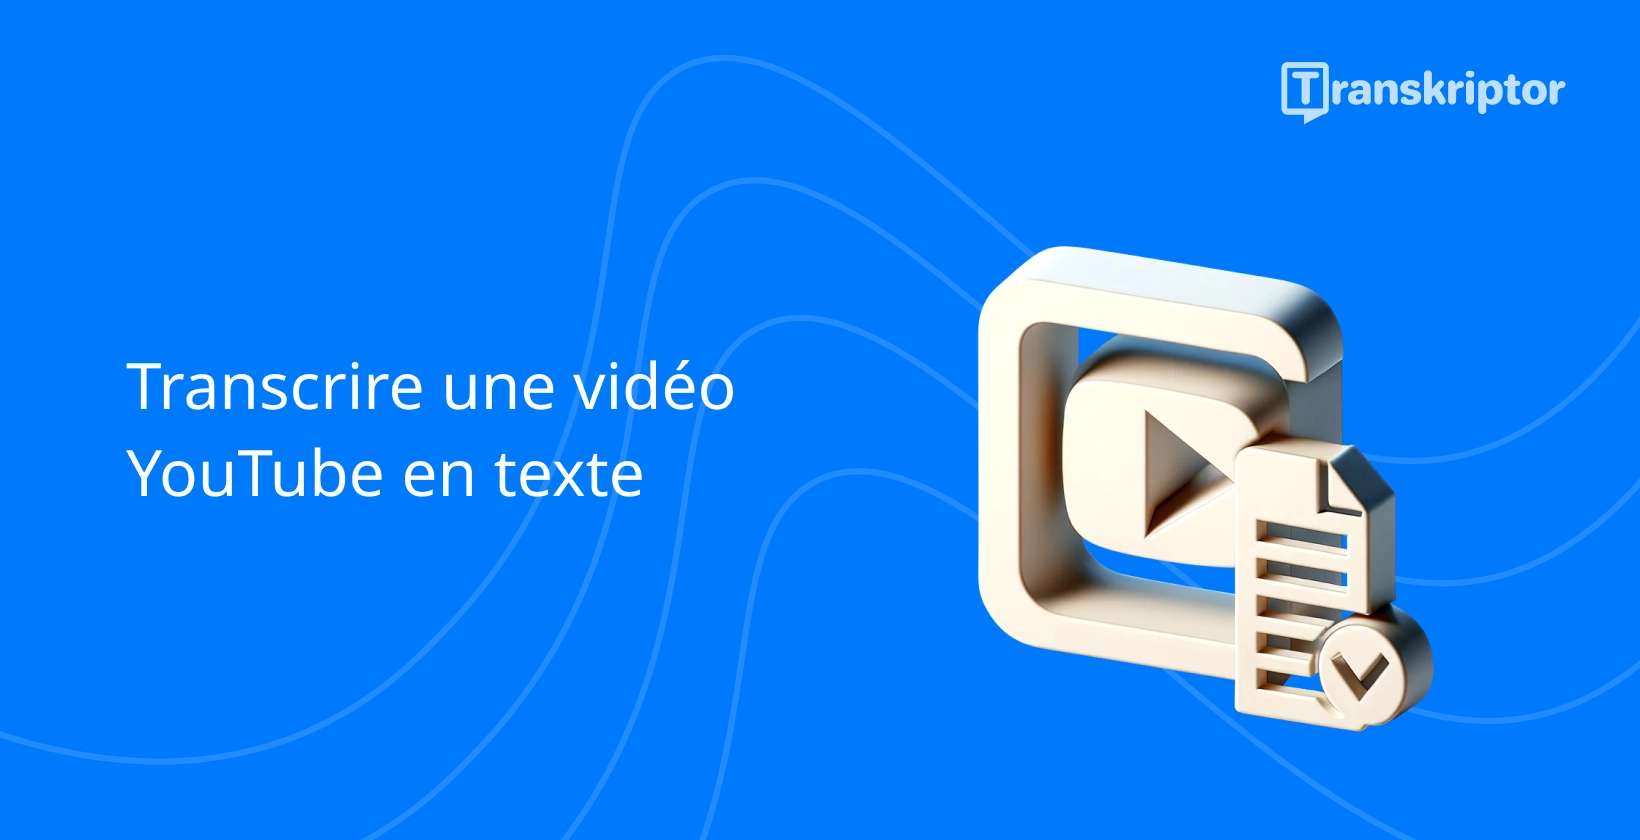 Icône des services de transcription avec bouton de lecture et document symbolisant la conversion vidéo YouTube en texte.